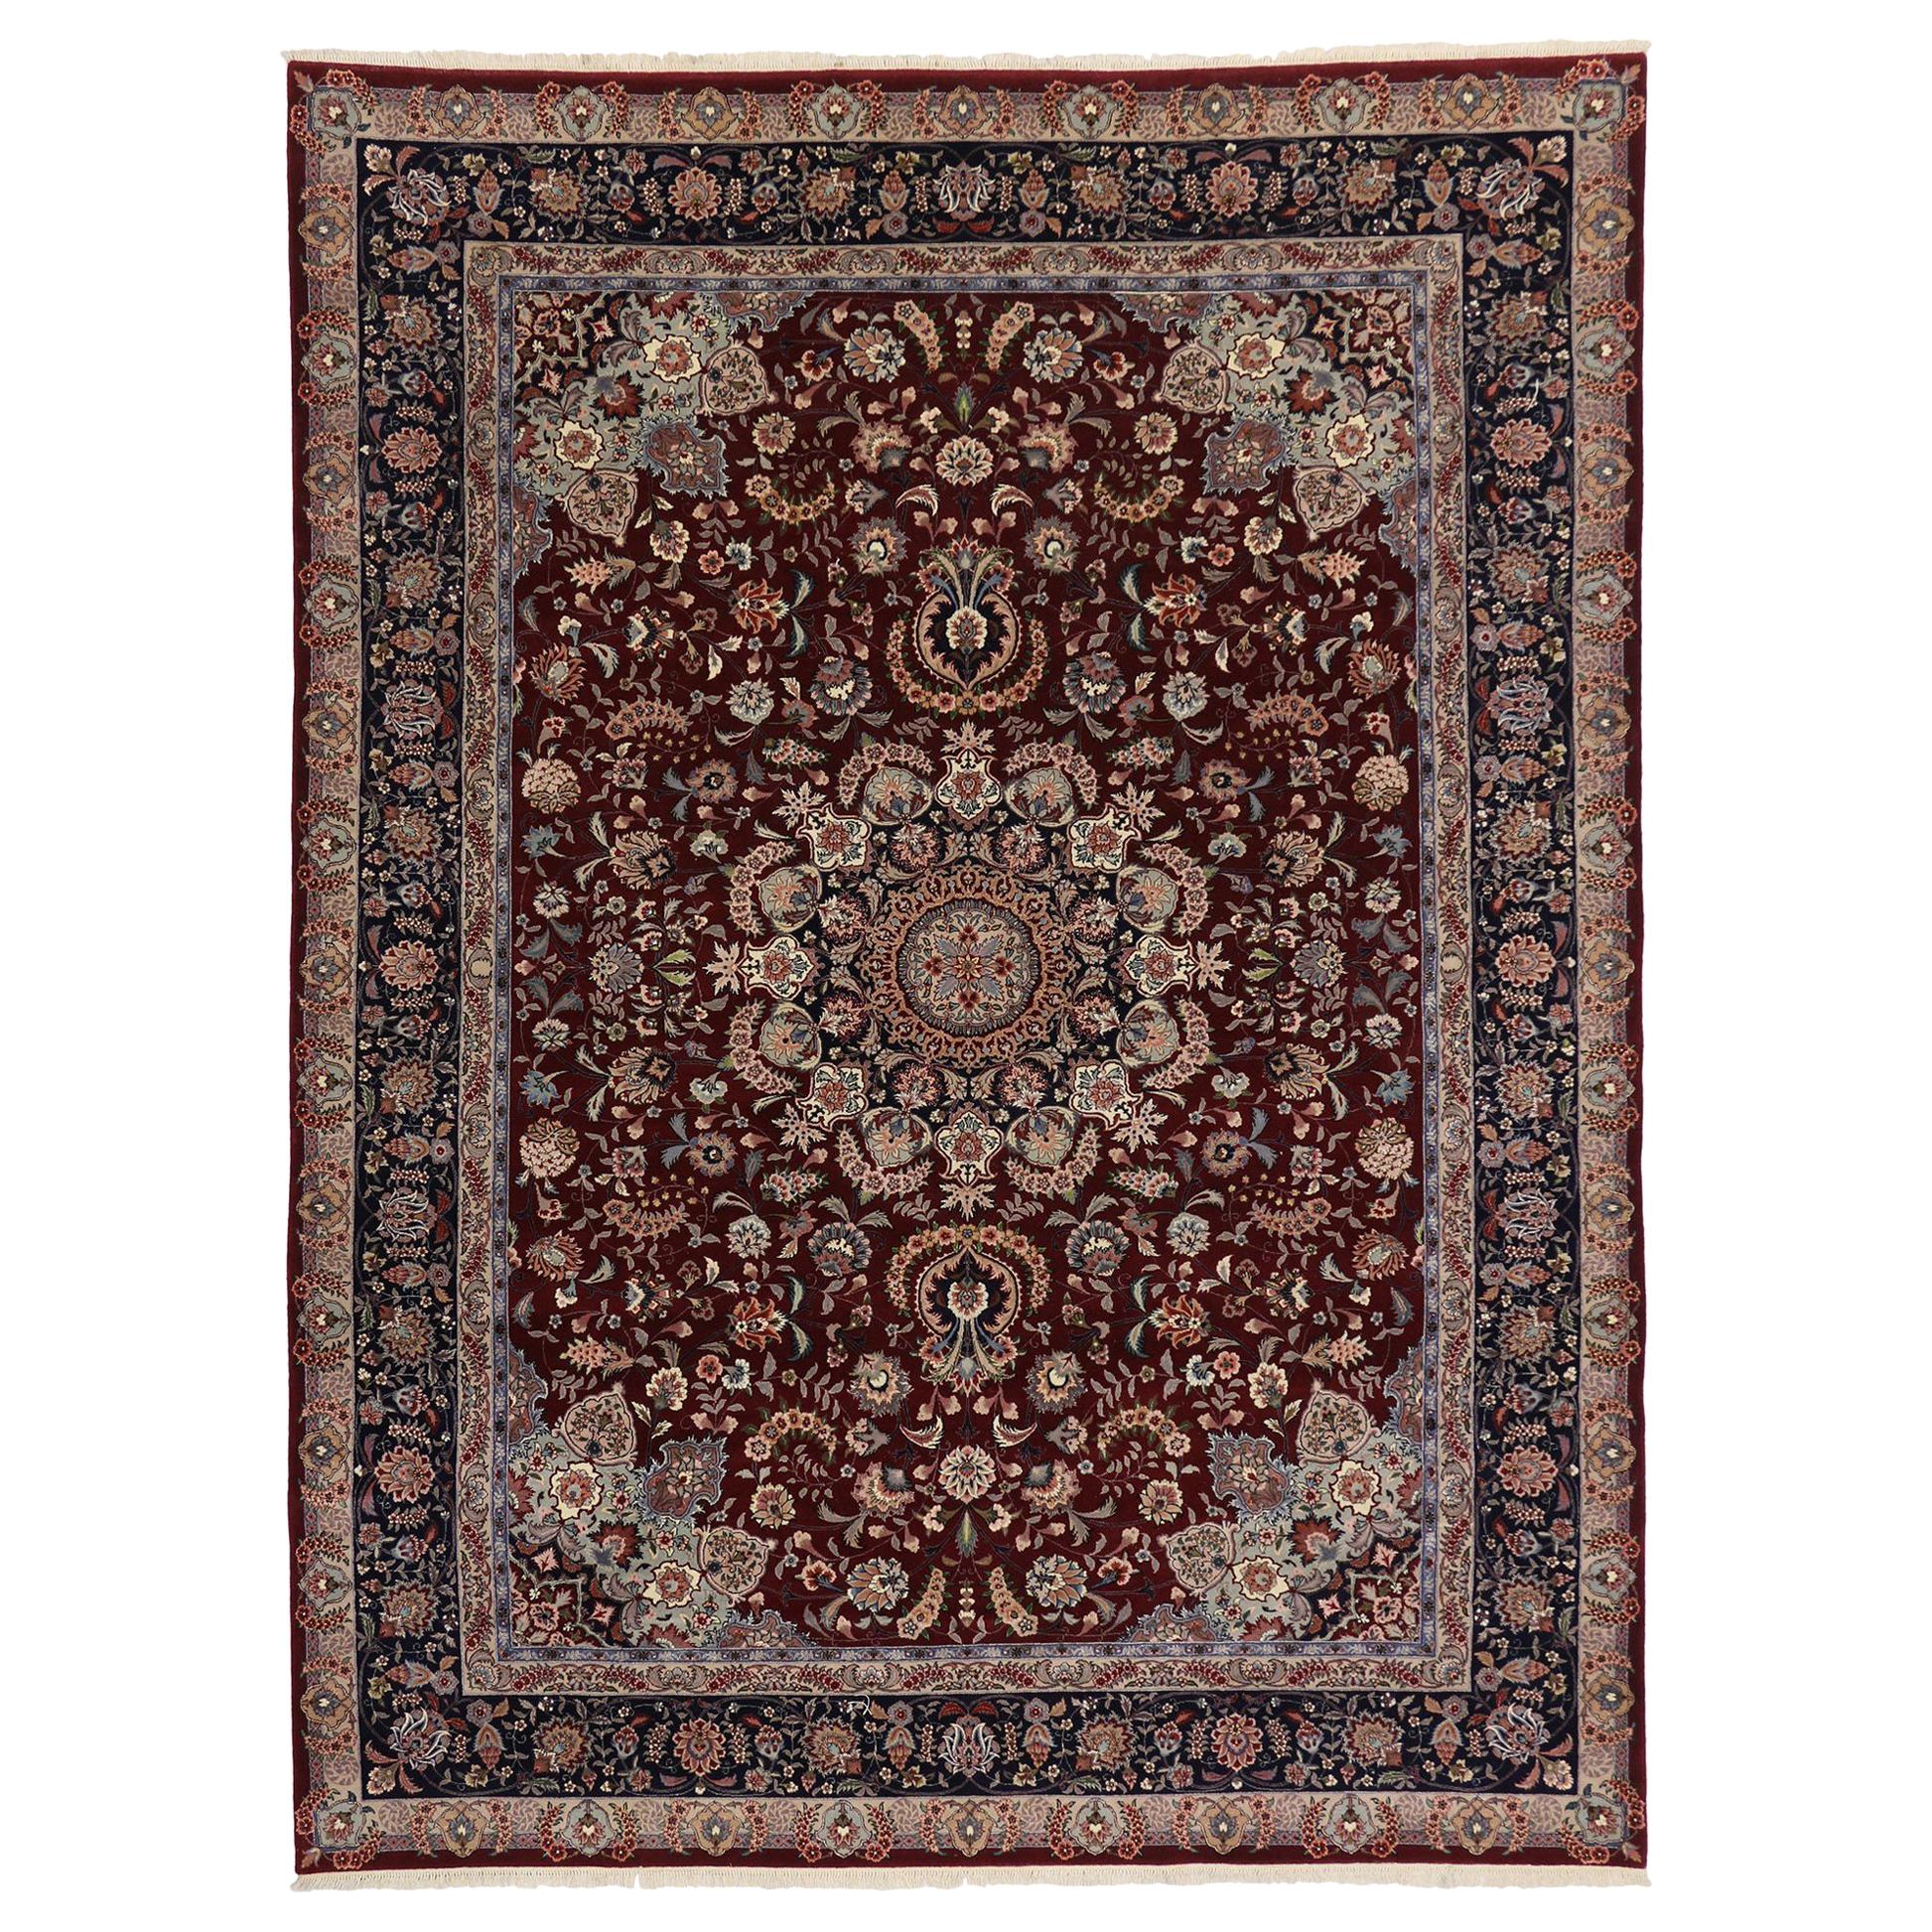 Vintage Vintage-Teppich im persischen Stil mit arabischem Barock-Regency-Stil